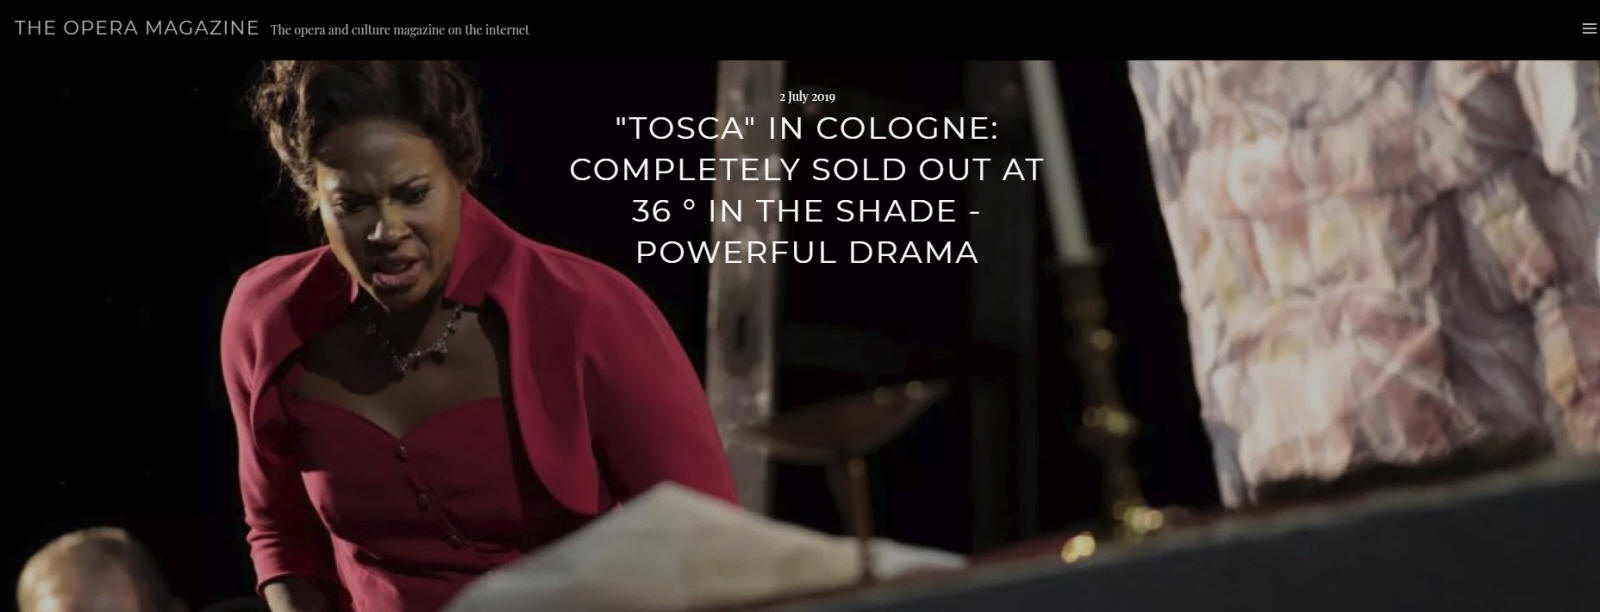 Tosca in Cologne starring Jos Cura as Mario Cavaradossi, July 2019.